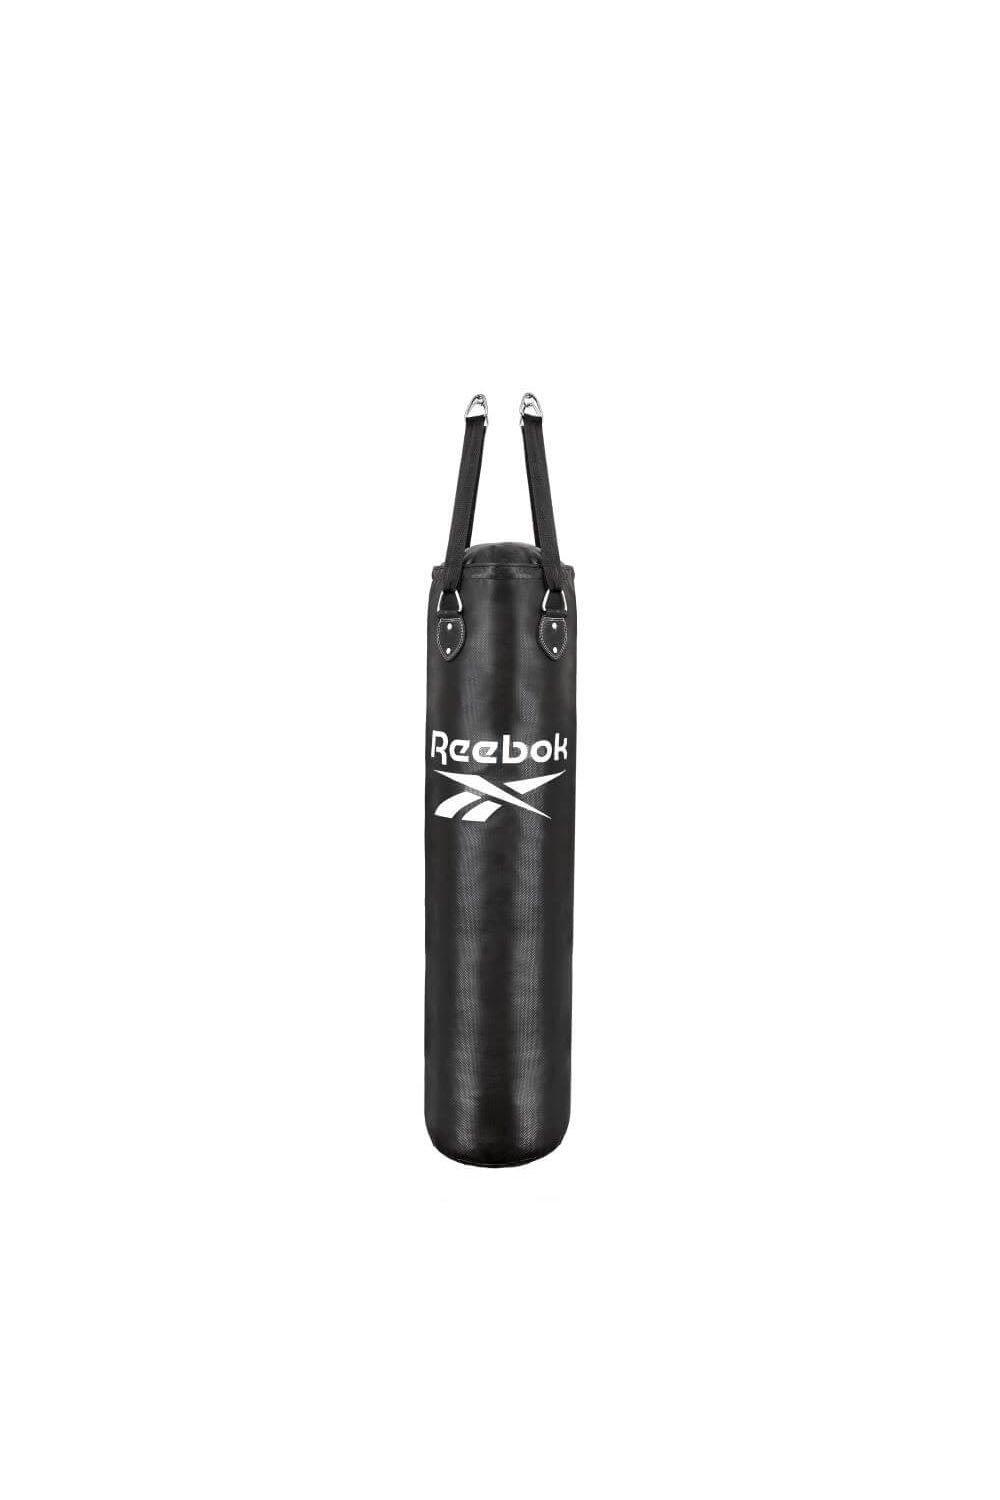 Reebok 4ft PU Punch Bag|black